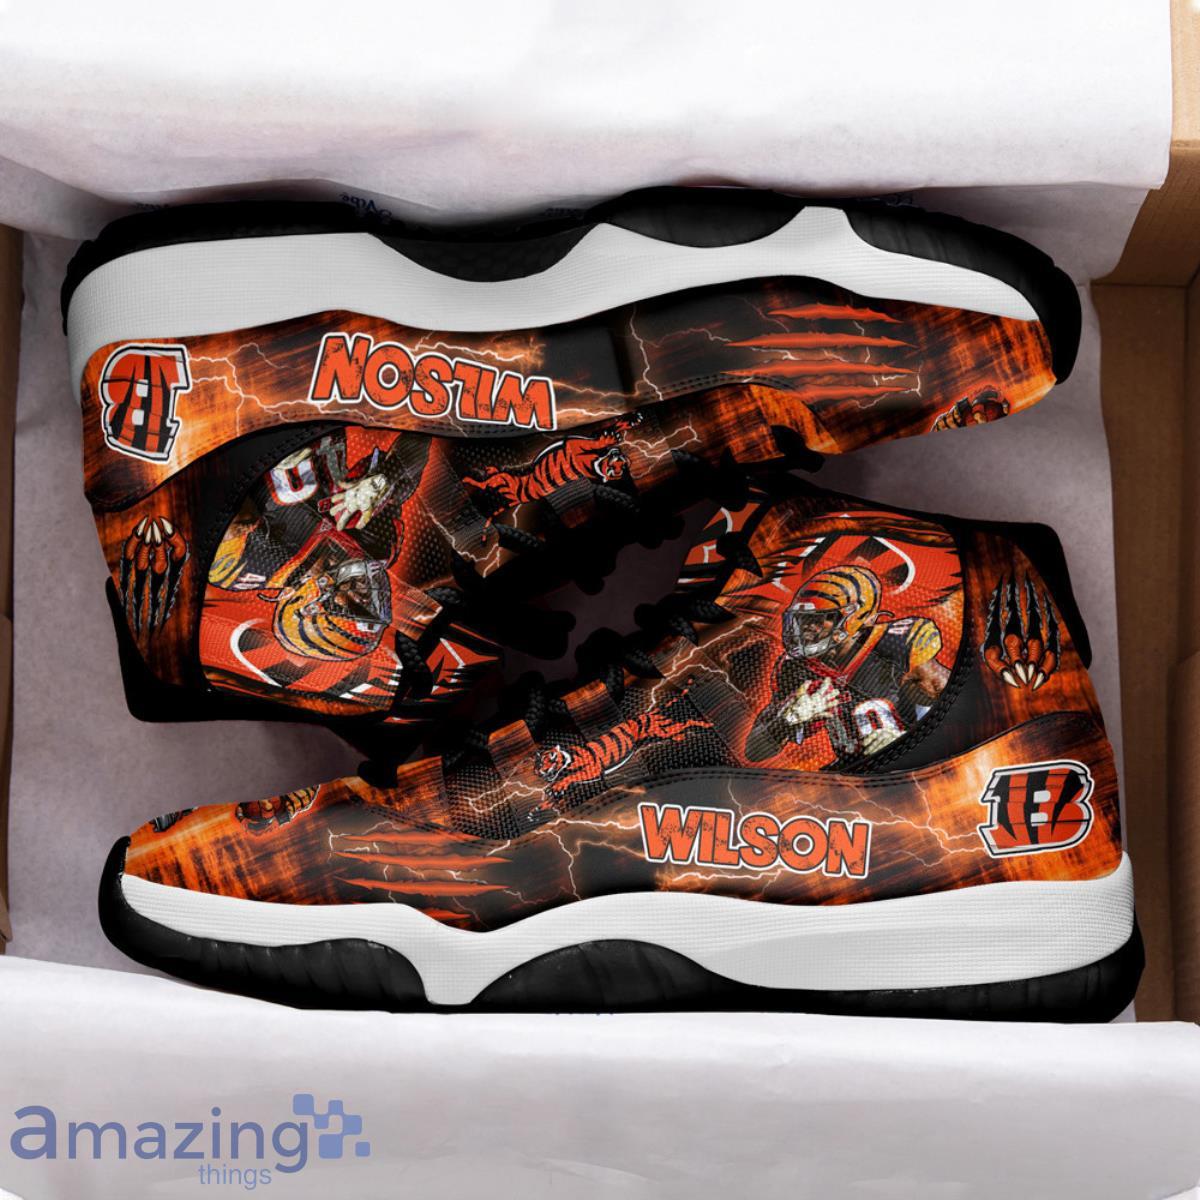 Cincinnati Bengals Brandon Wilson Air Jordan 11 Shoes For Men Women Product Photo 2